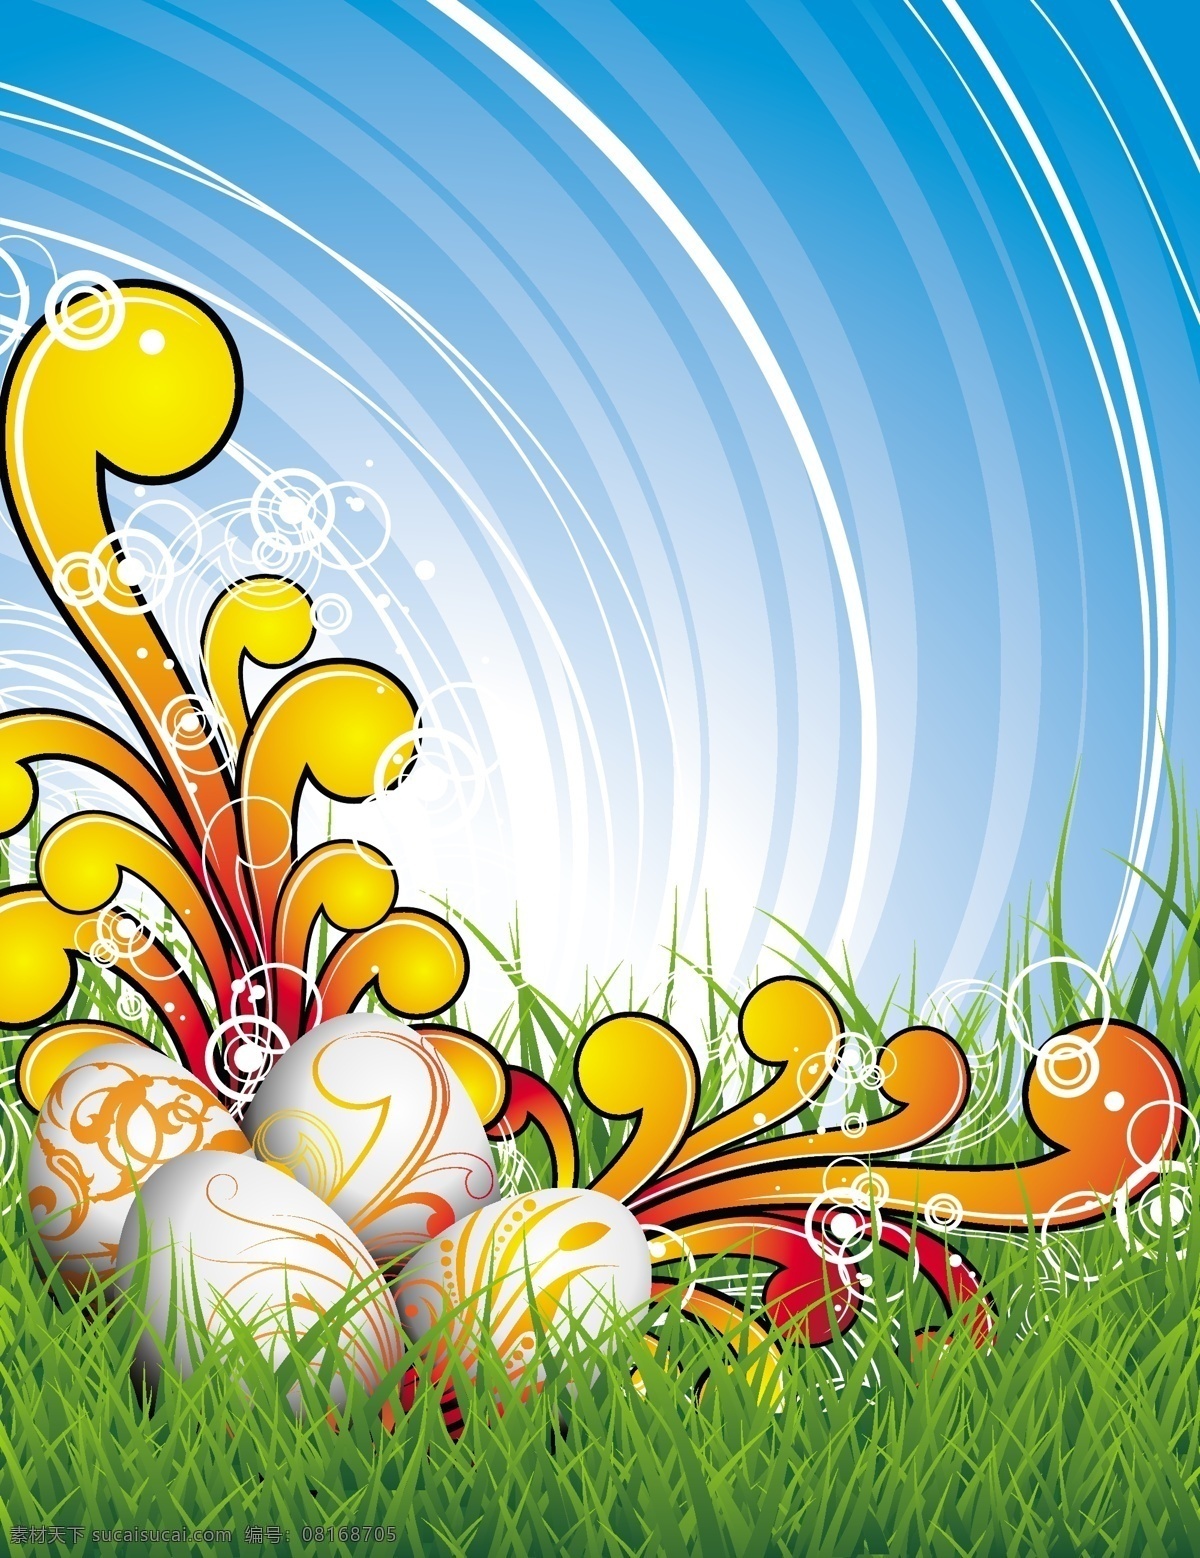 复活节 彩蛋 花纹 草 鸡蛋 矢量卡片 小草 矢量 海报 其他海报设计